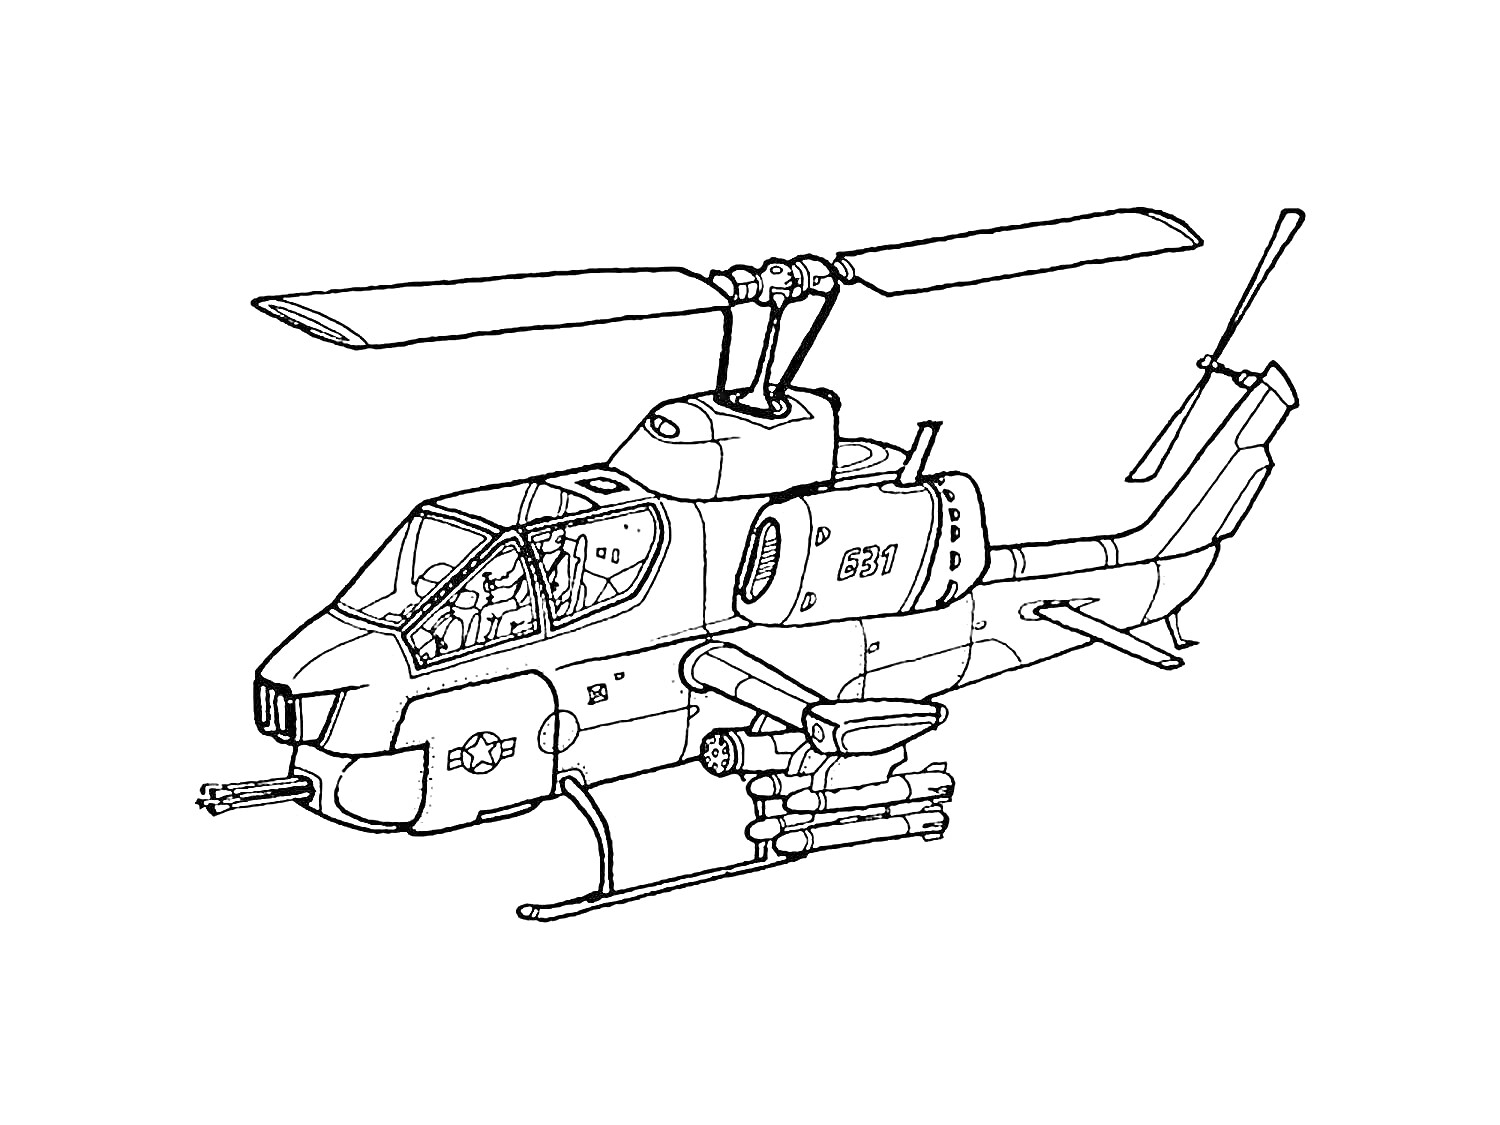 Боевой вертолет с деталями корпуса, пушкой, ракетами и пилоном